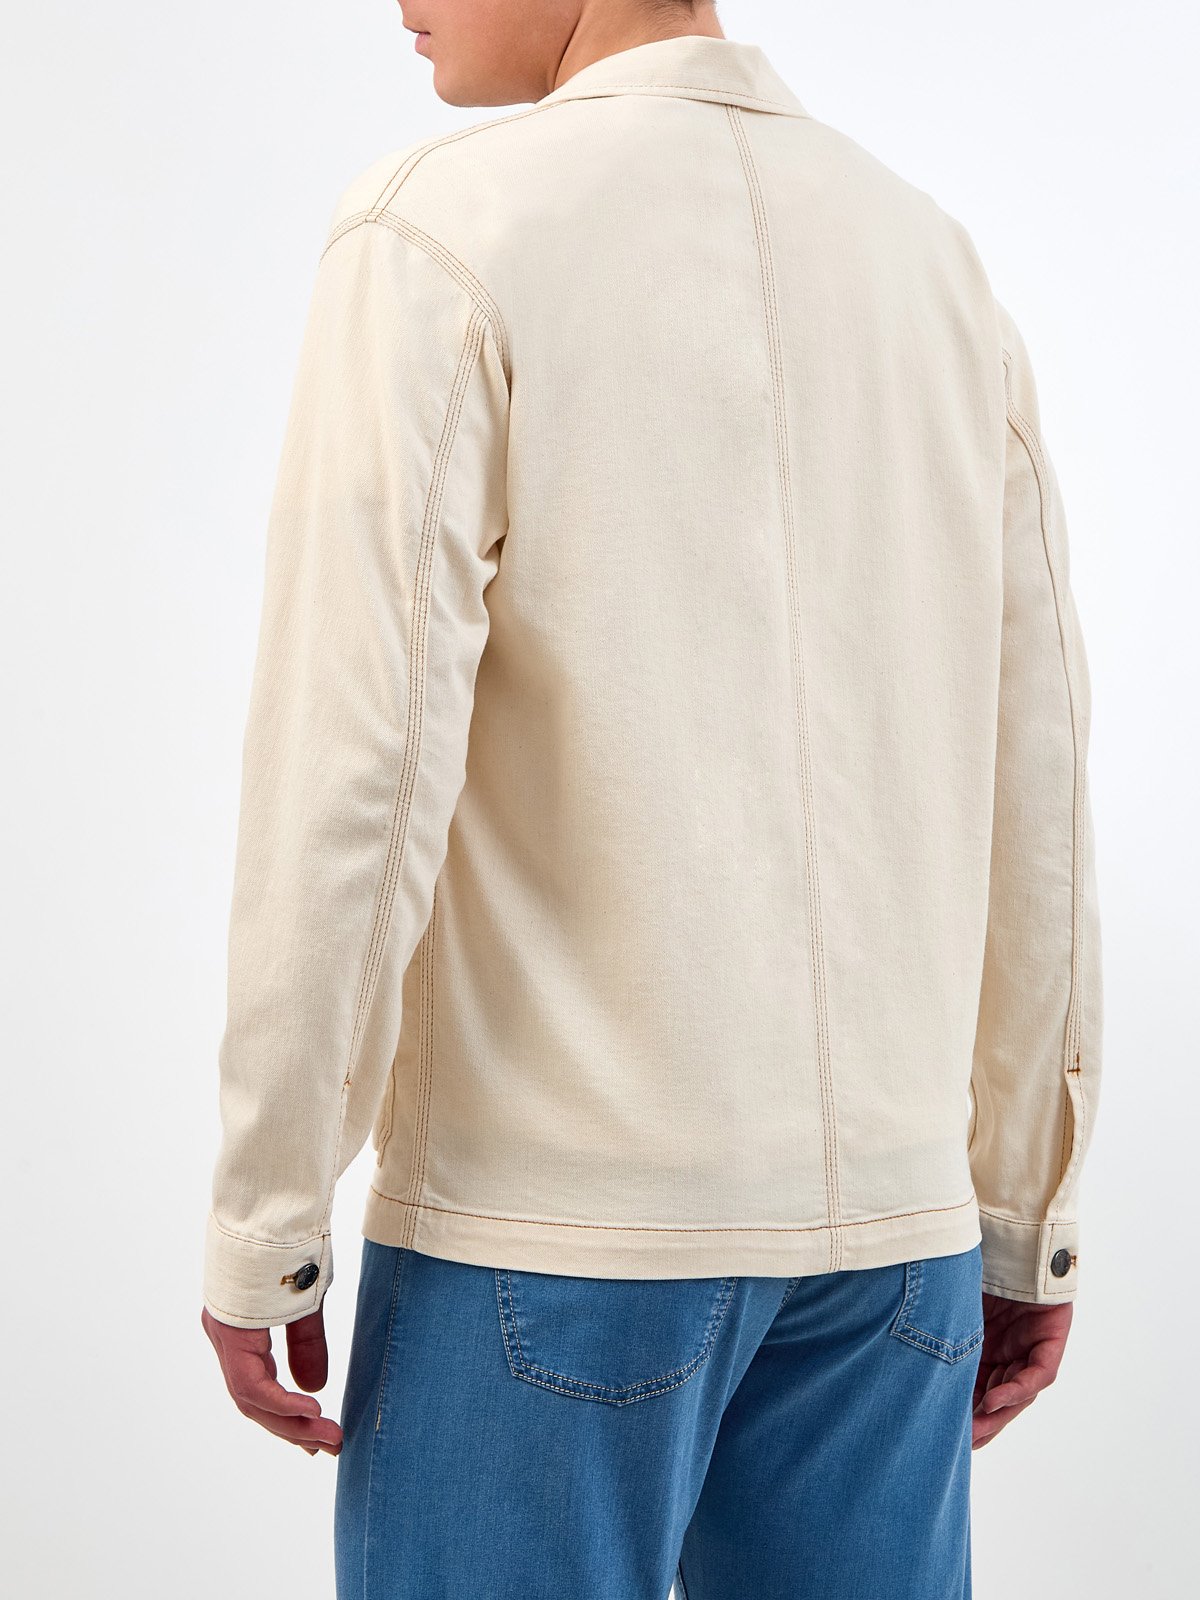 Куртка из хлопка и льна с накладными карманами и прострочкой CANALI, цвет бежевый, размер 48;50;52 - фото 4